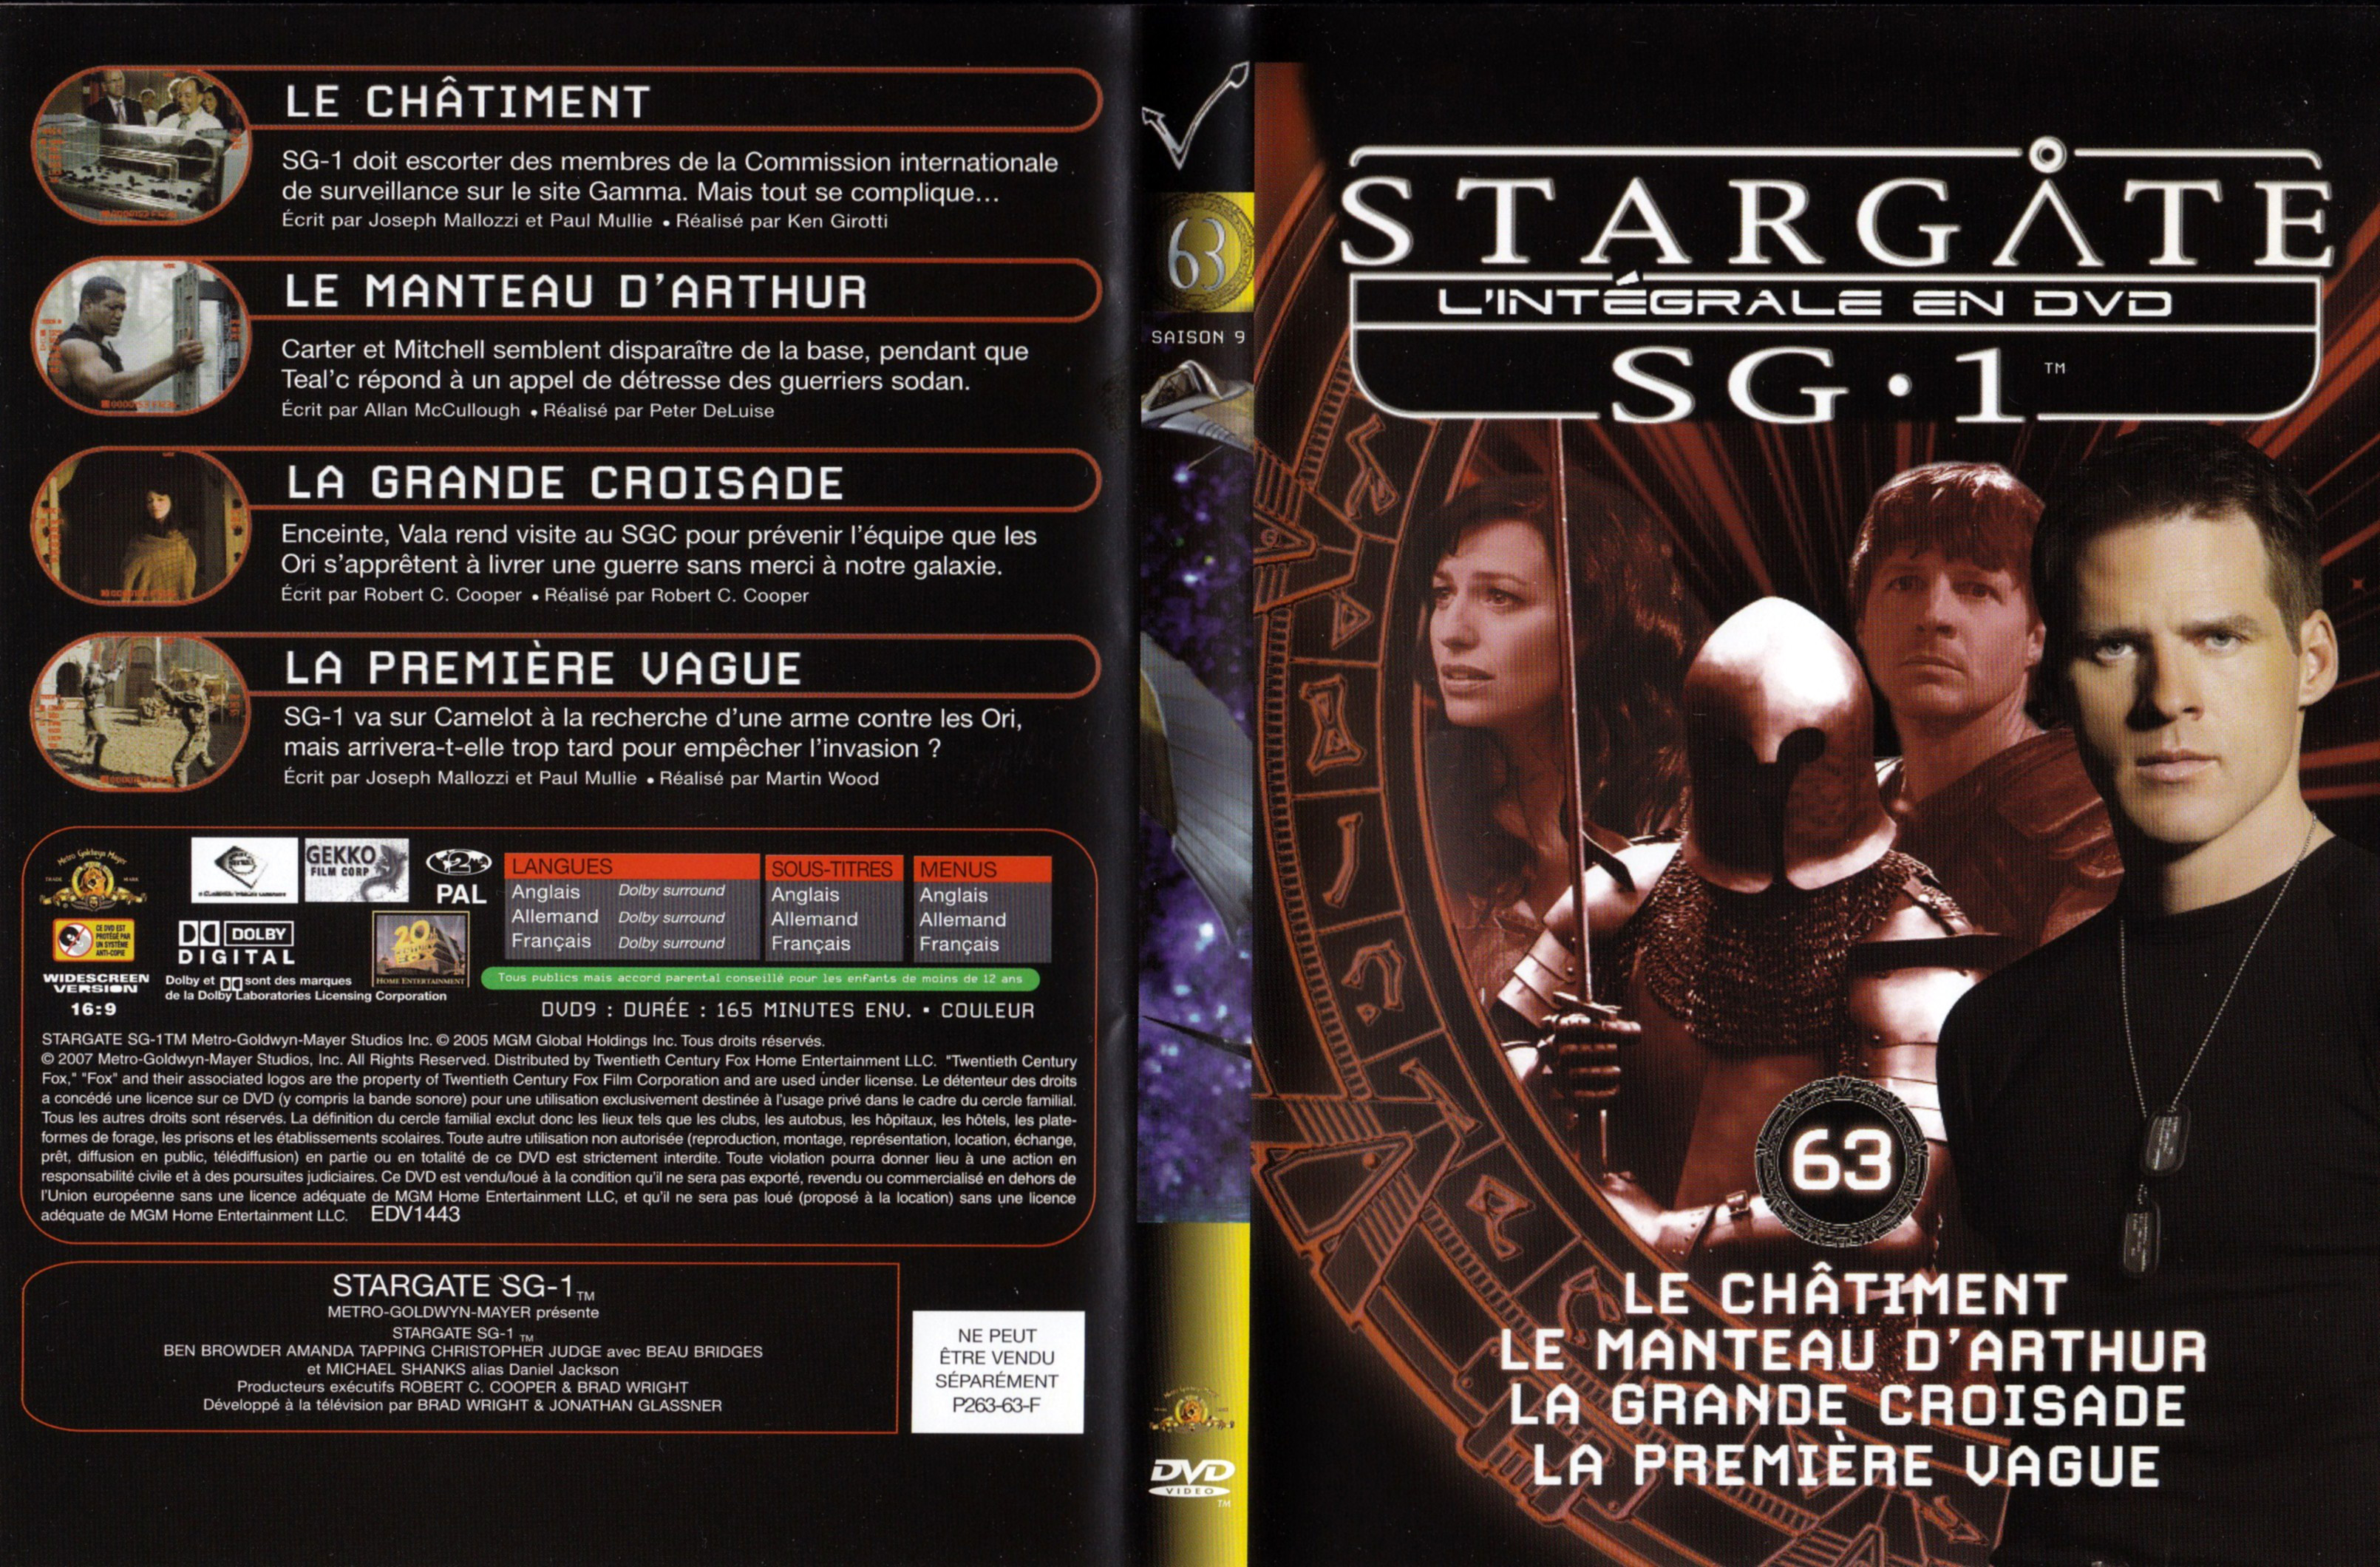 Jaquette DVD Stargate SG1 Intgrale Saison 9 vol 63